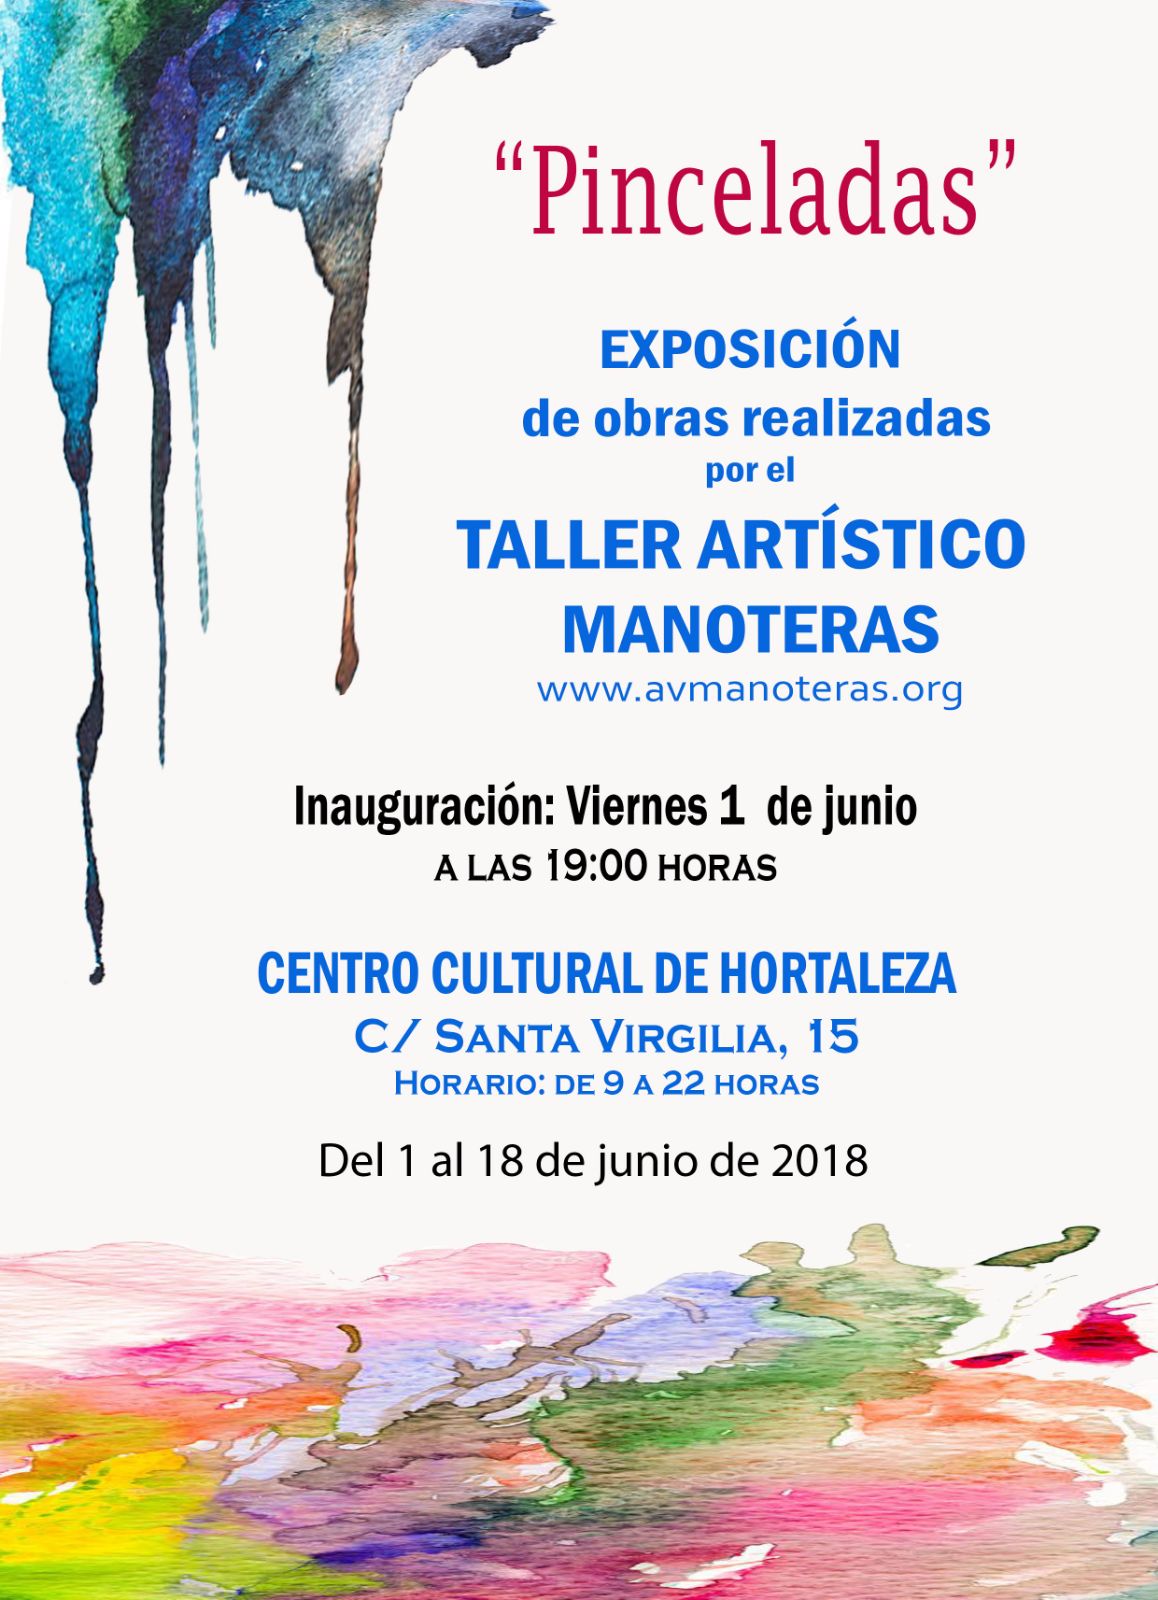 Exposición Pinceladas en el Centro Cultural Hortaleza